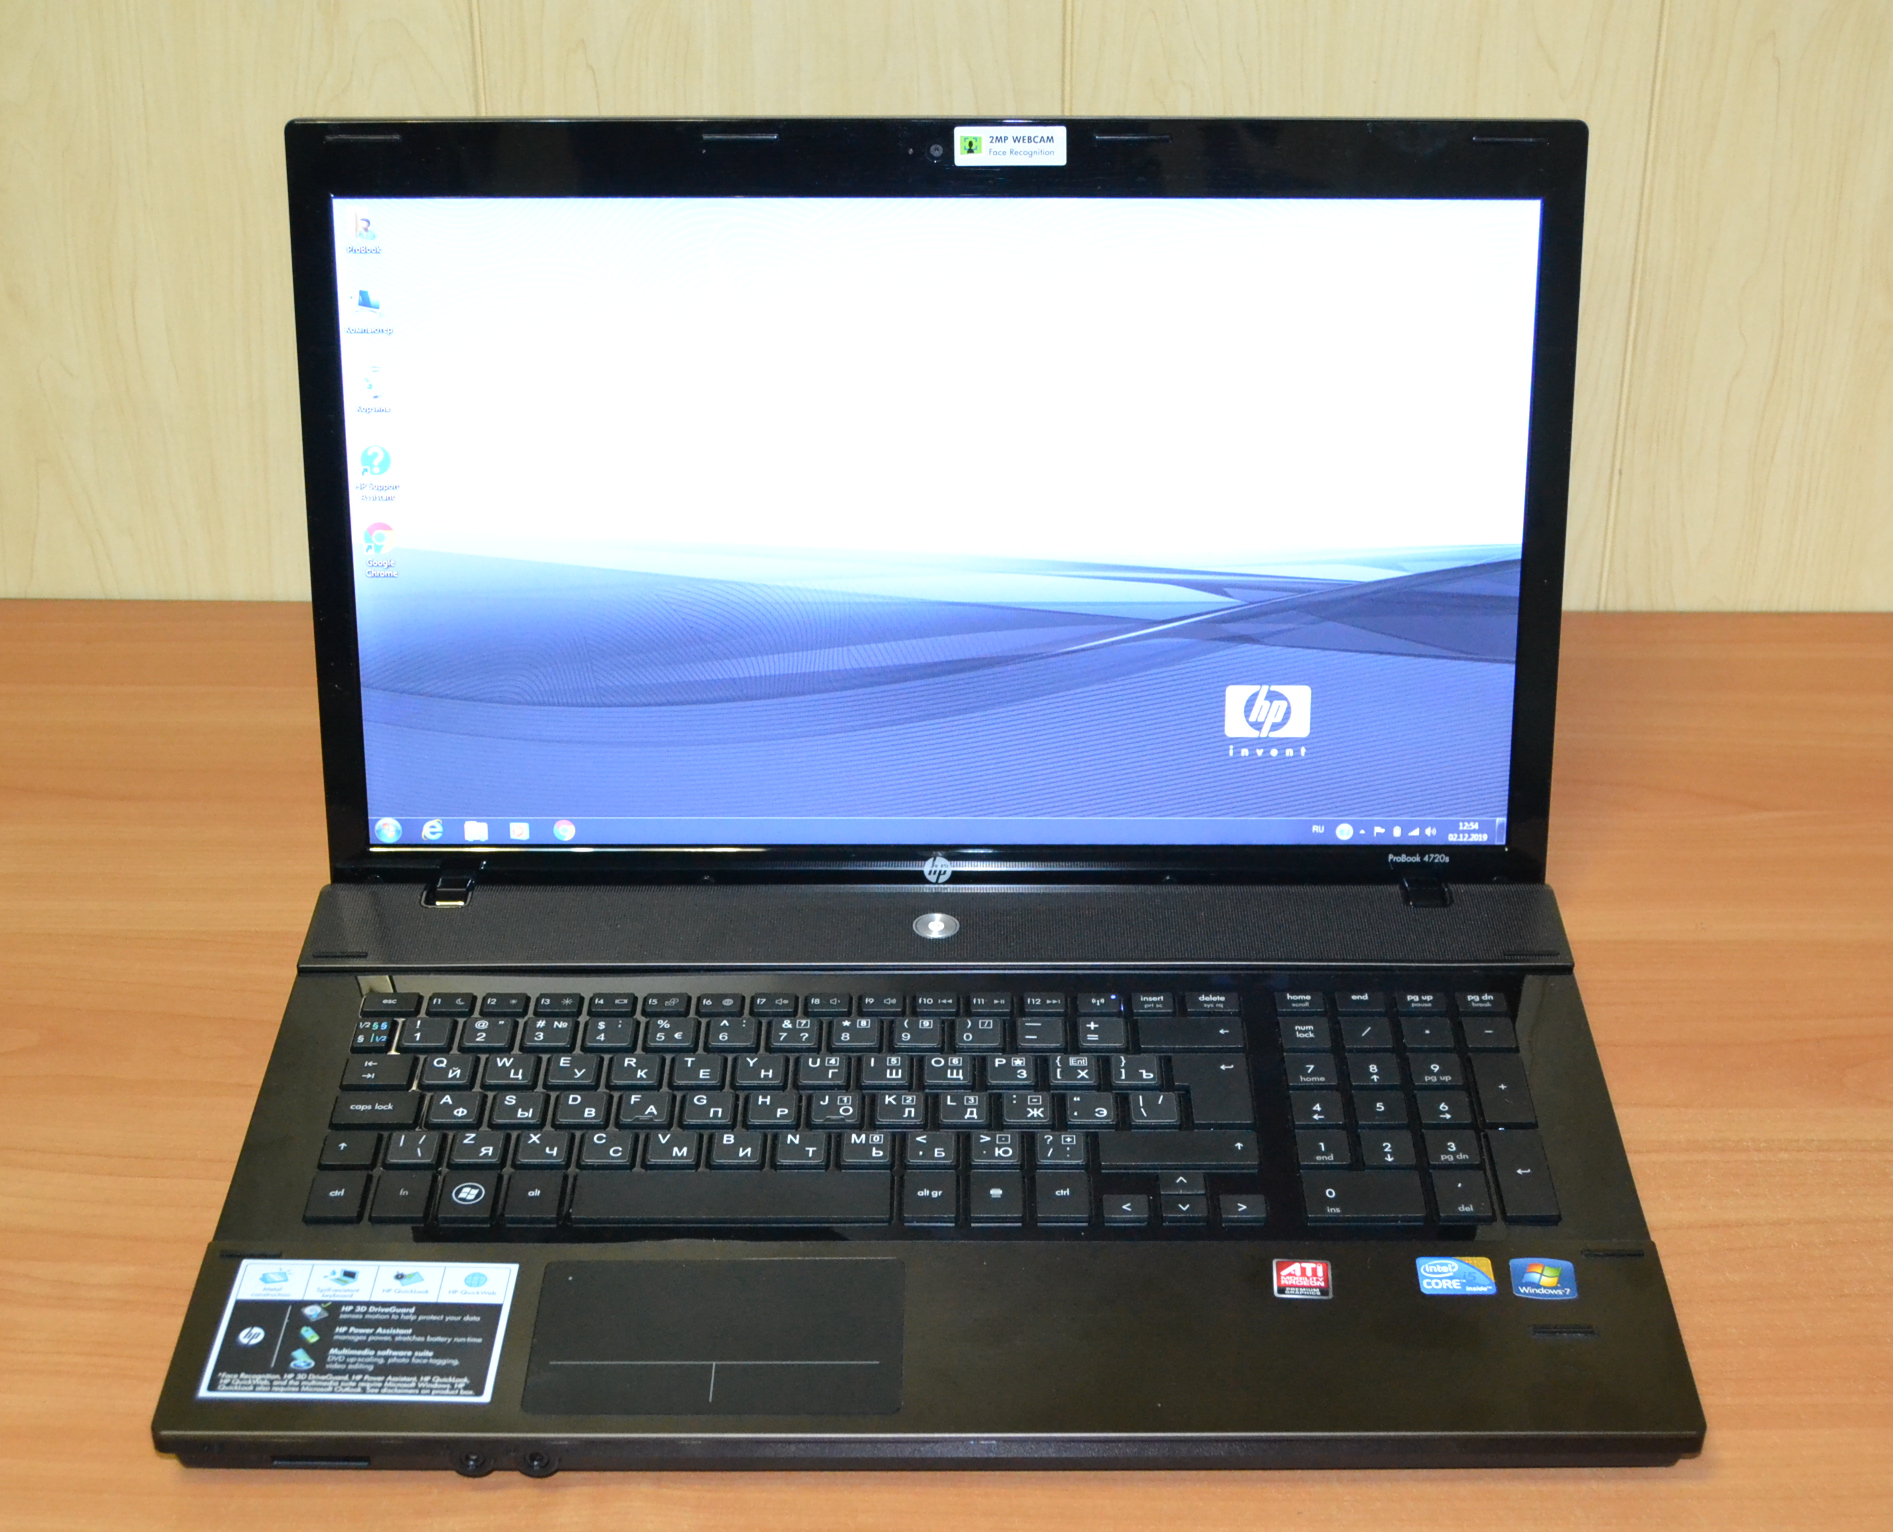 HP ProBook 4720s — купить б/у ноутбук за 19,900 руб. с гарантией 6 месяцев